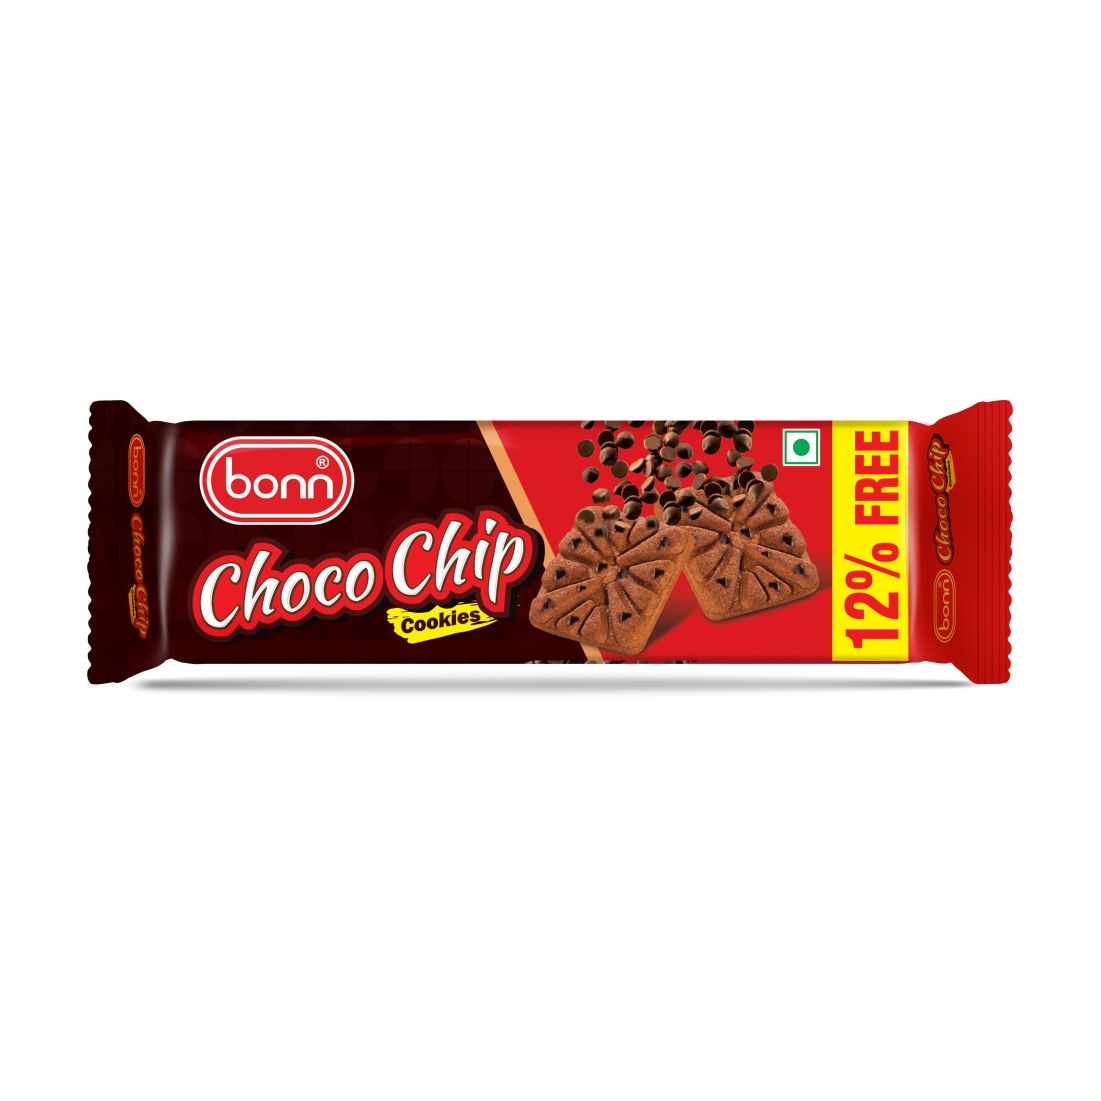 Bonn Choco Chip Cookies (67 g + 8 g Free)